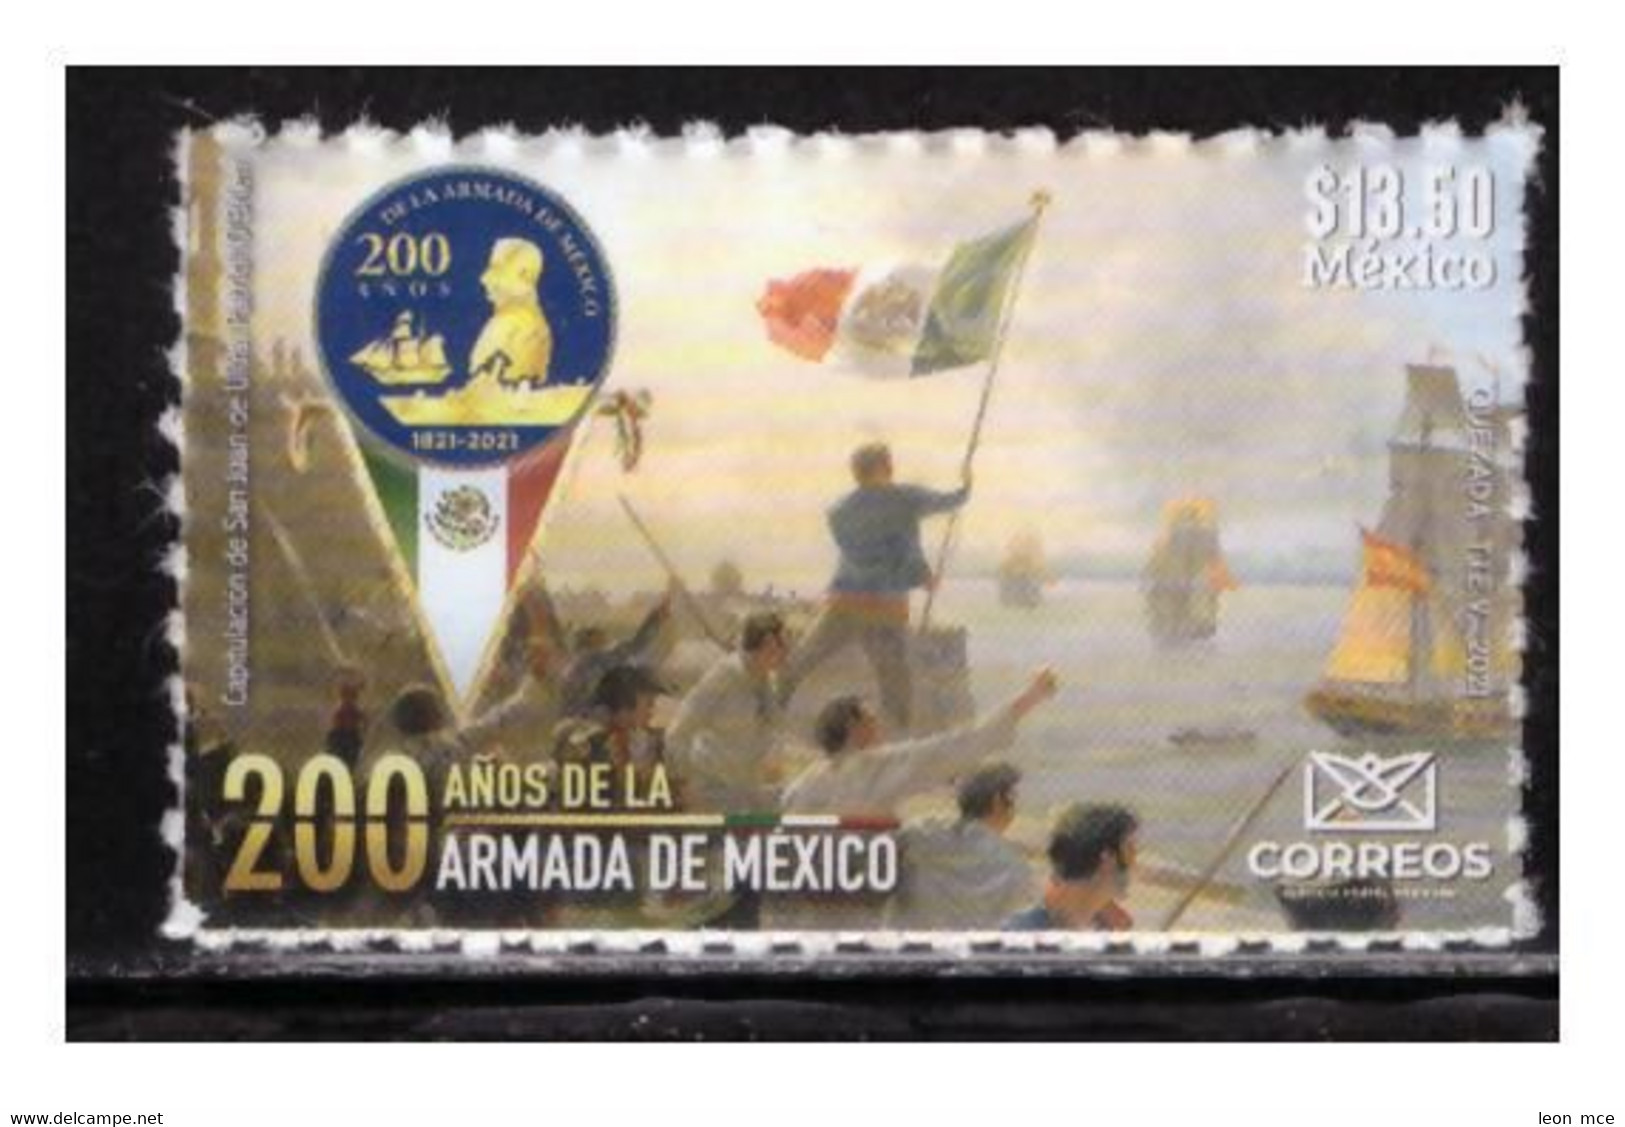 2021 MÉXICO 200 Años De La Armada De México MNH 200 Years Of The Mexican Navy  SELF-ADHERIBLE SEAL, FLAG, BOATS - Mexico